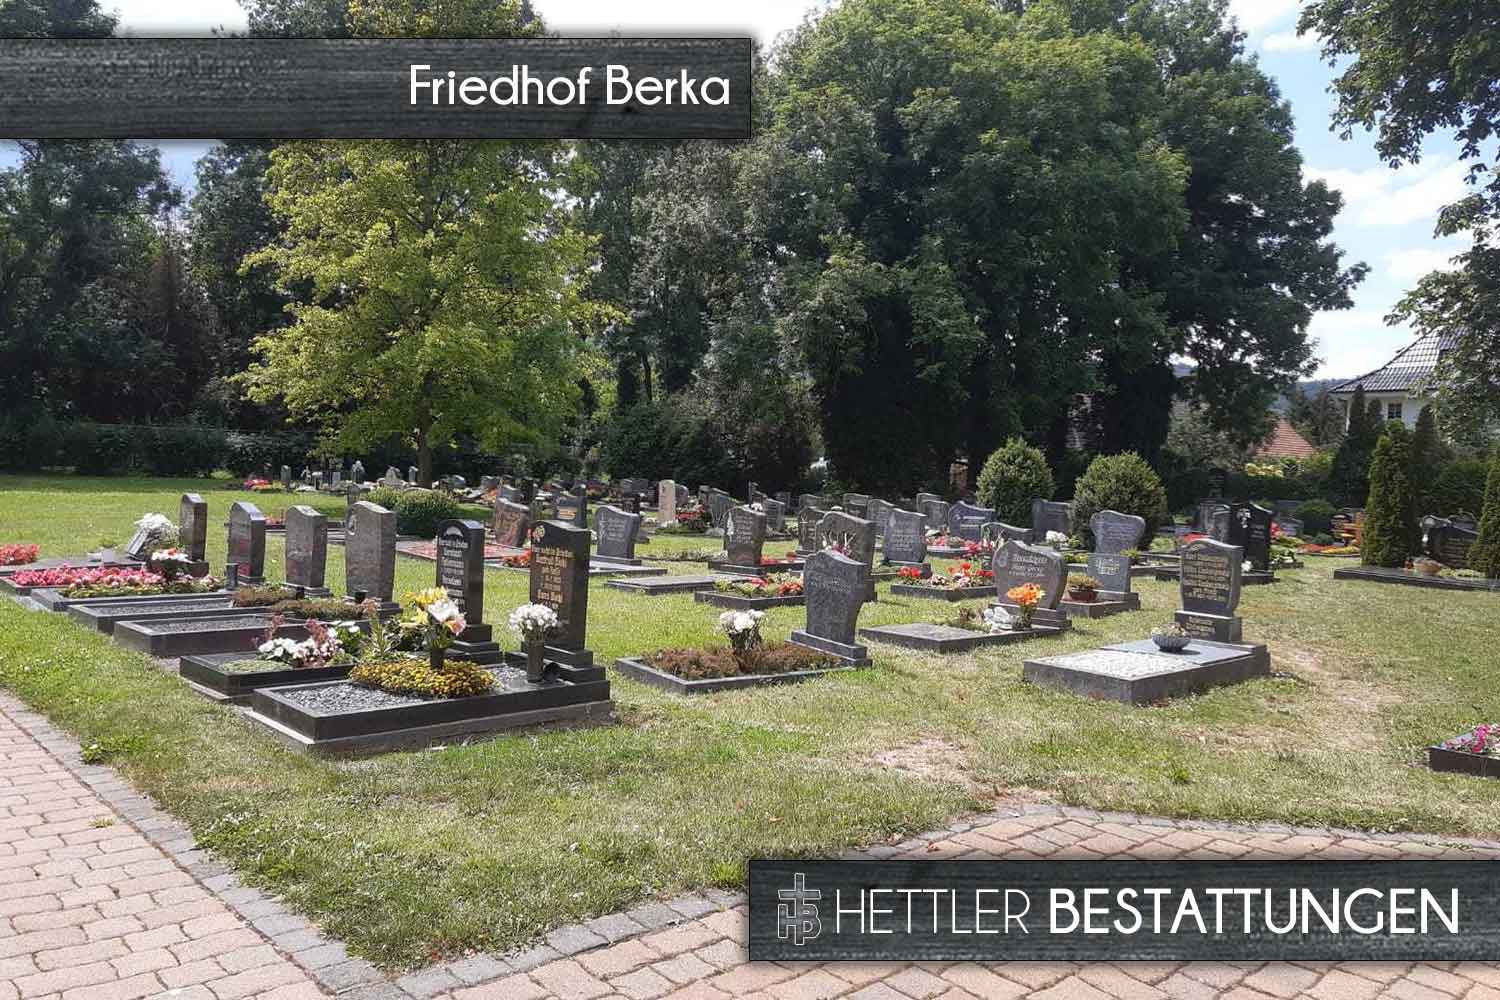 Friedhof in Berka. Ihr Ort des Abschieds mit Hettler Bestattungen.